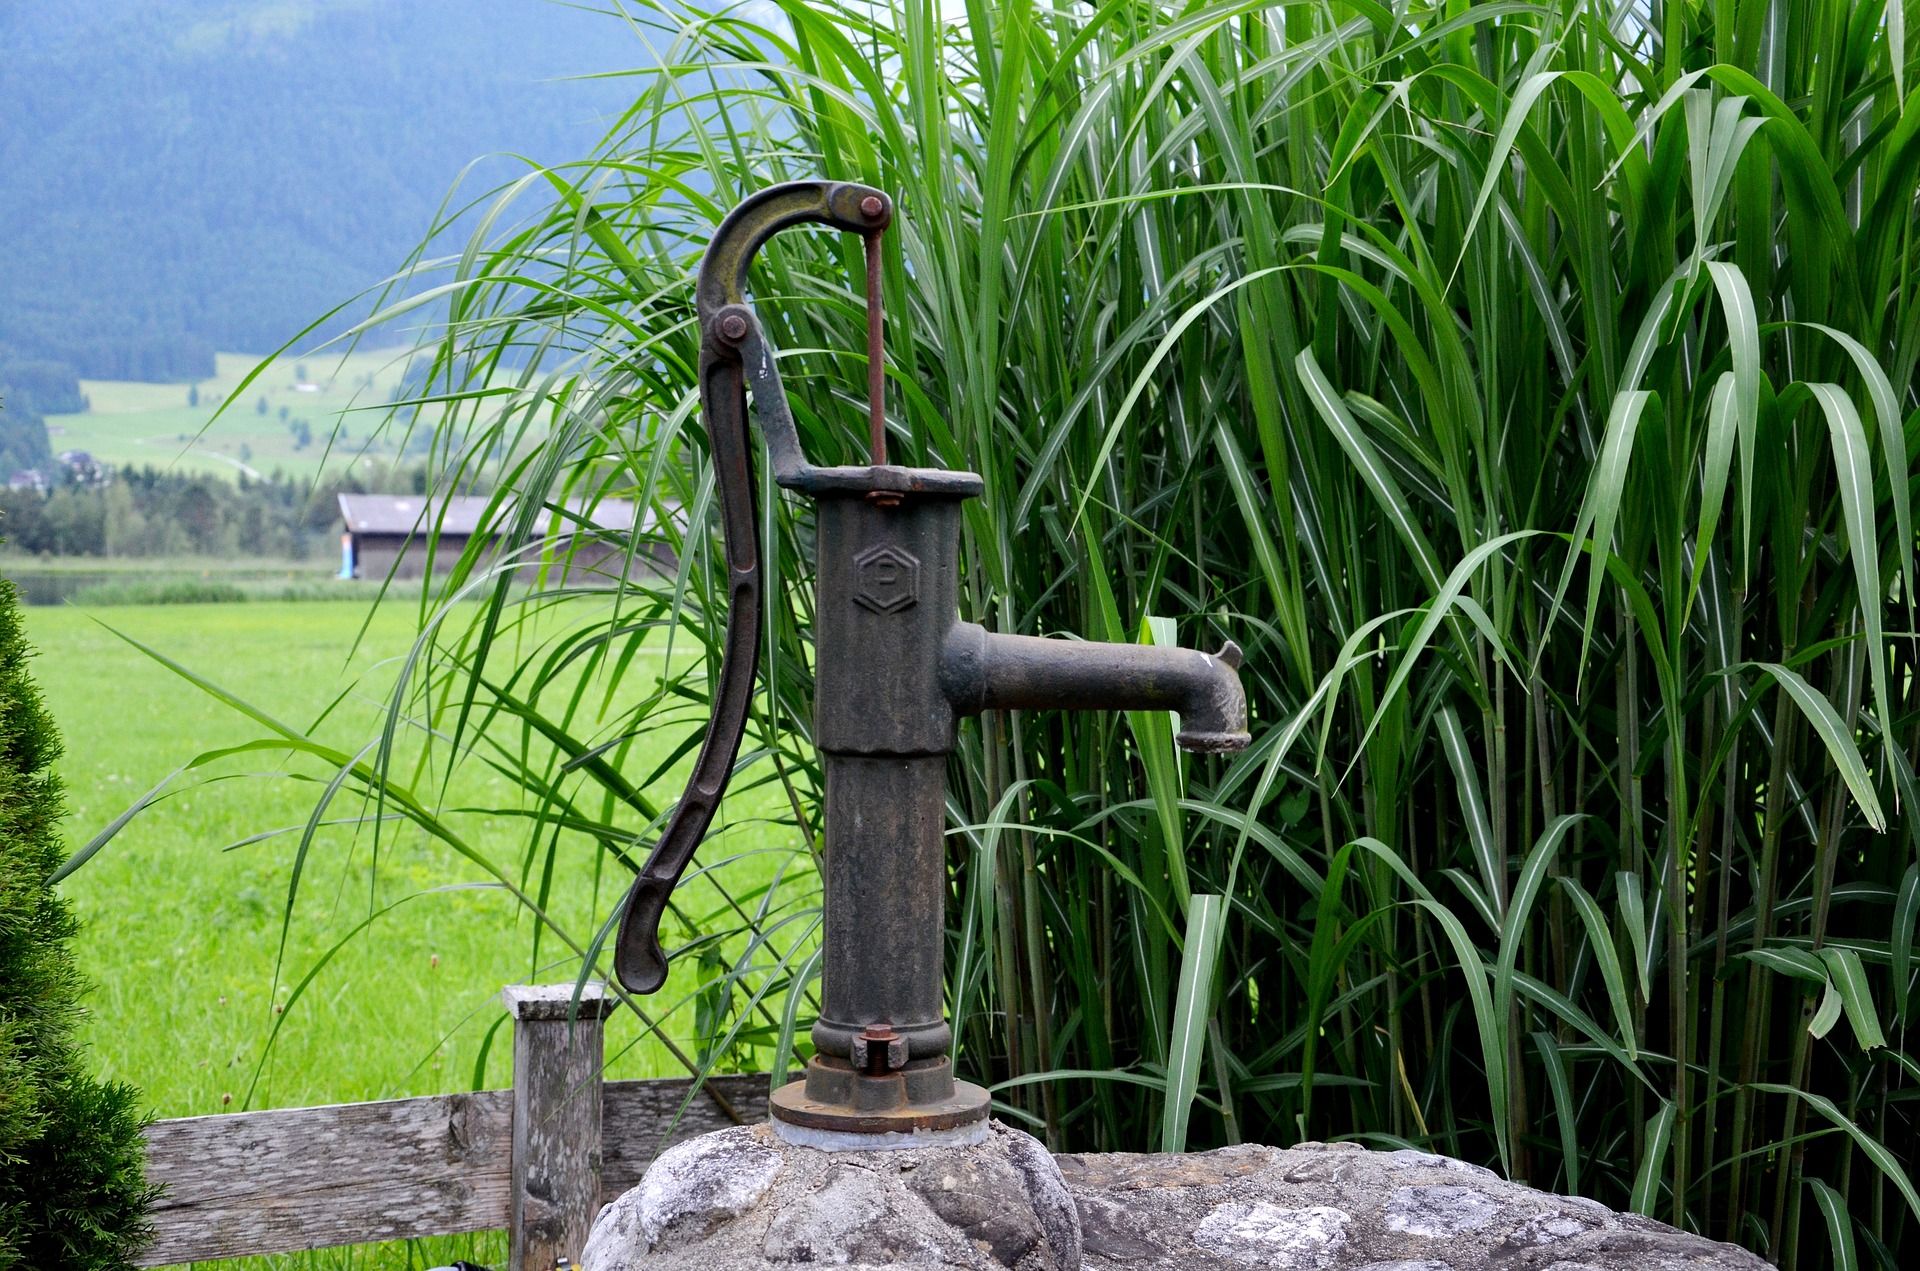 La sobreexplotación del agua subterránea hace peligrar su acceso universal / Foto: Pixabay